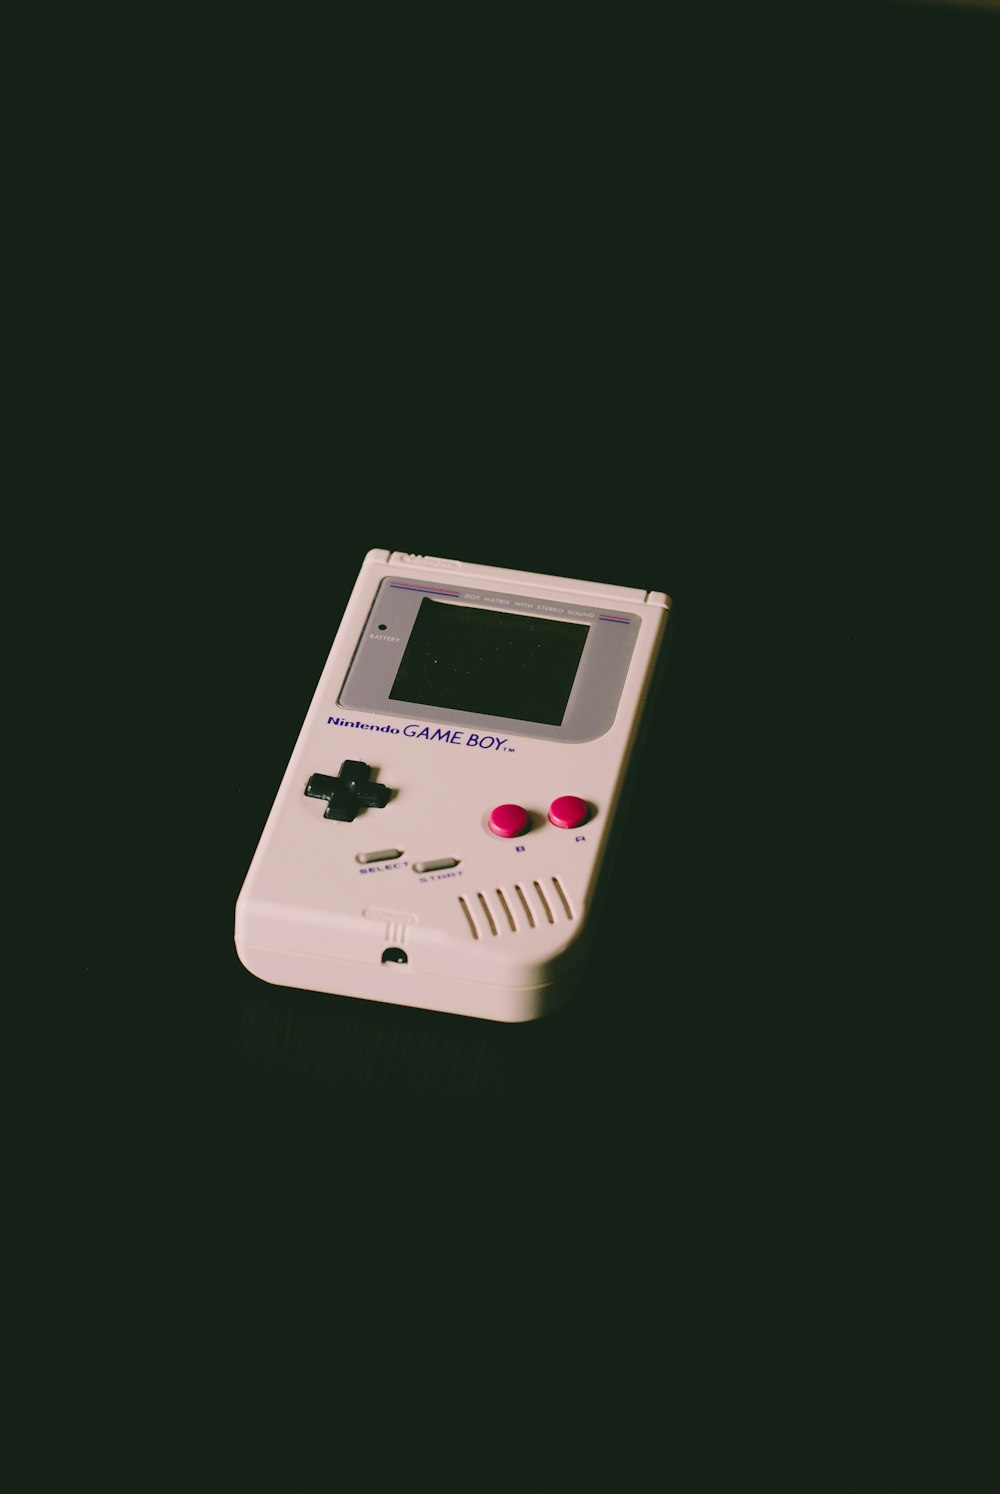 desativou o Nintendo Game Boy